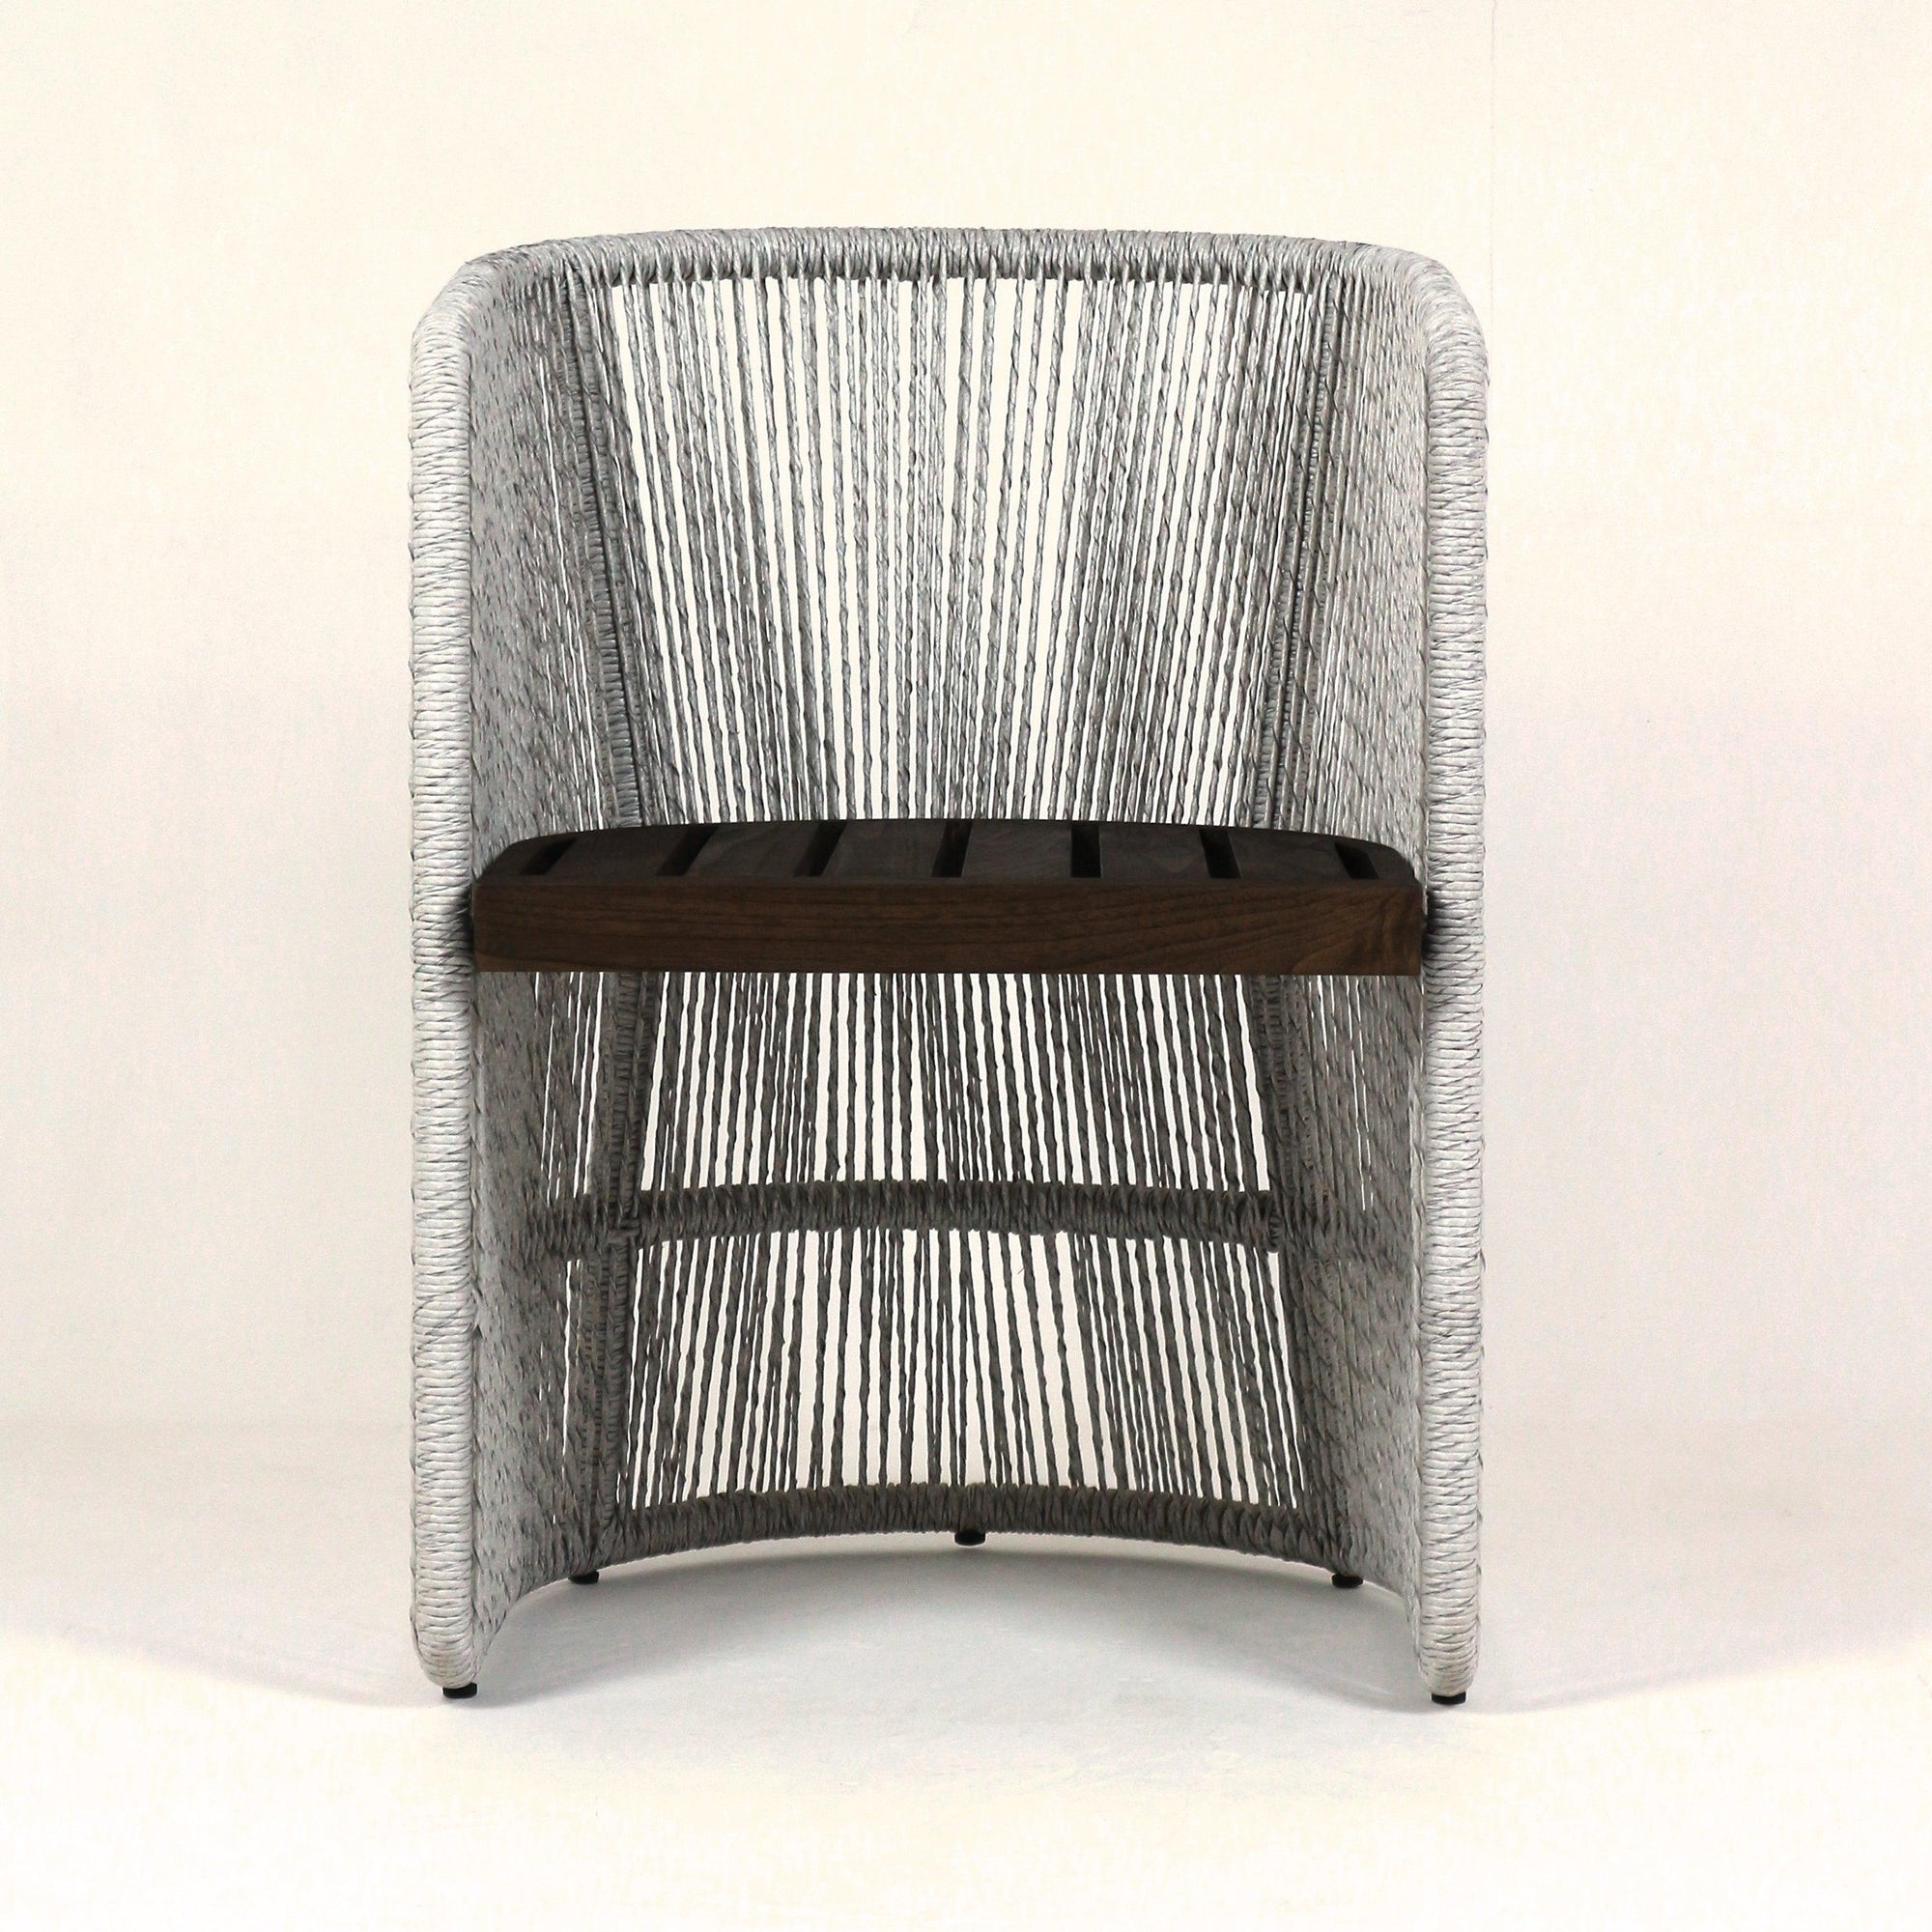 Dreman Woven Corded Rattan Indoor Dining Chair - INTERIORTONIC